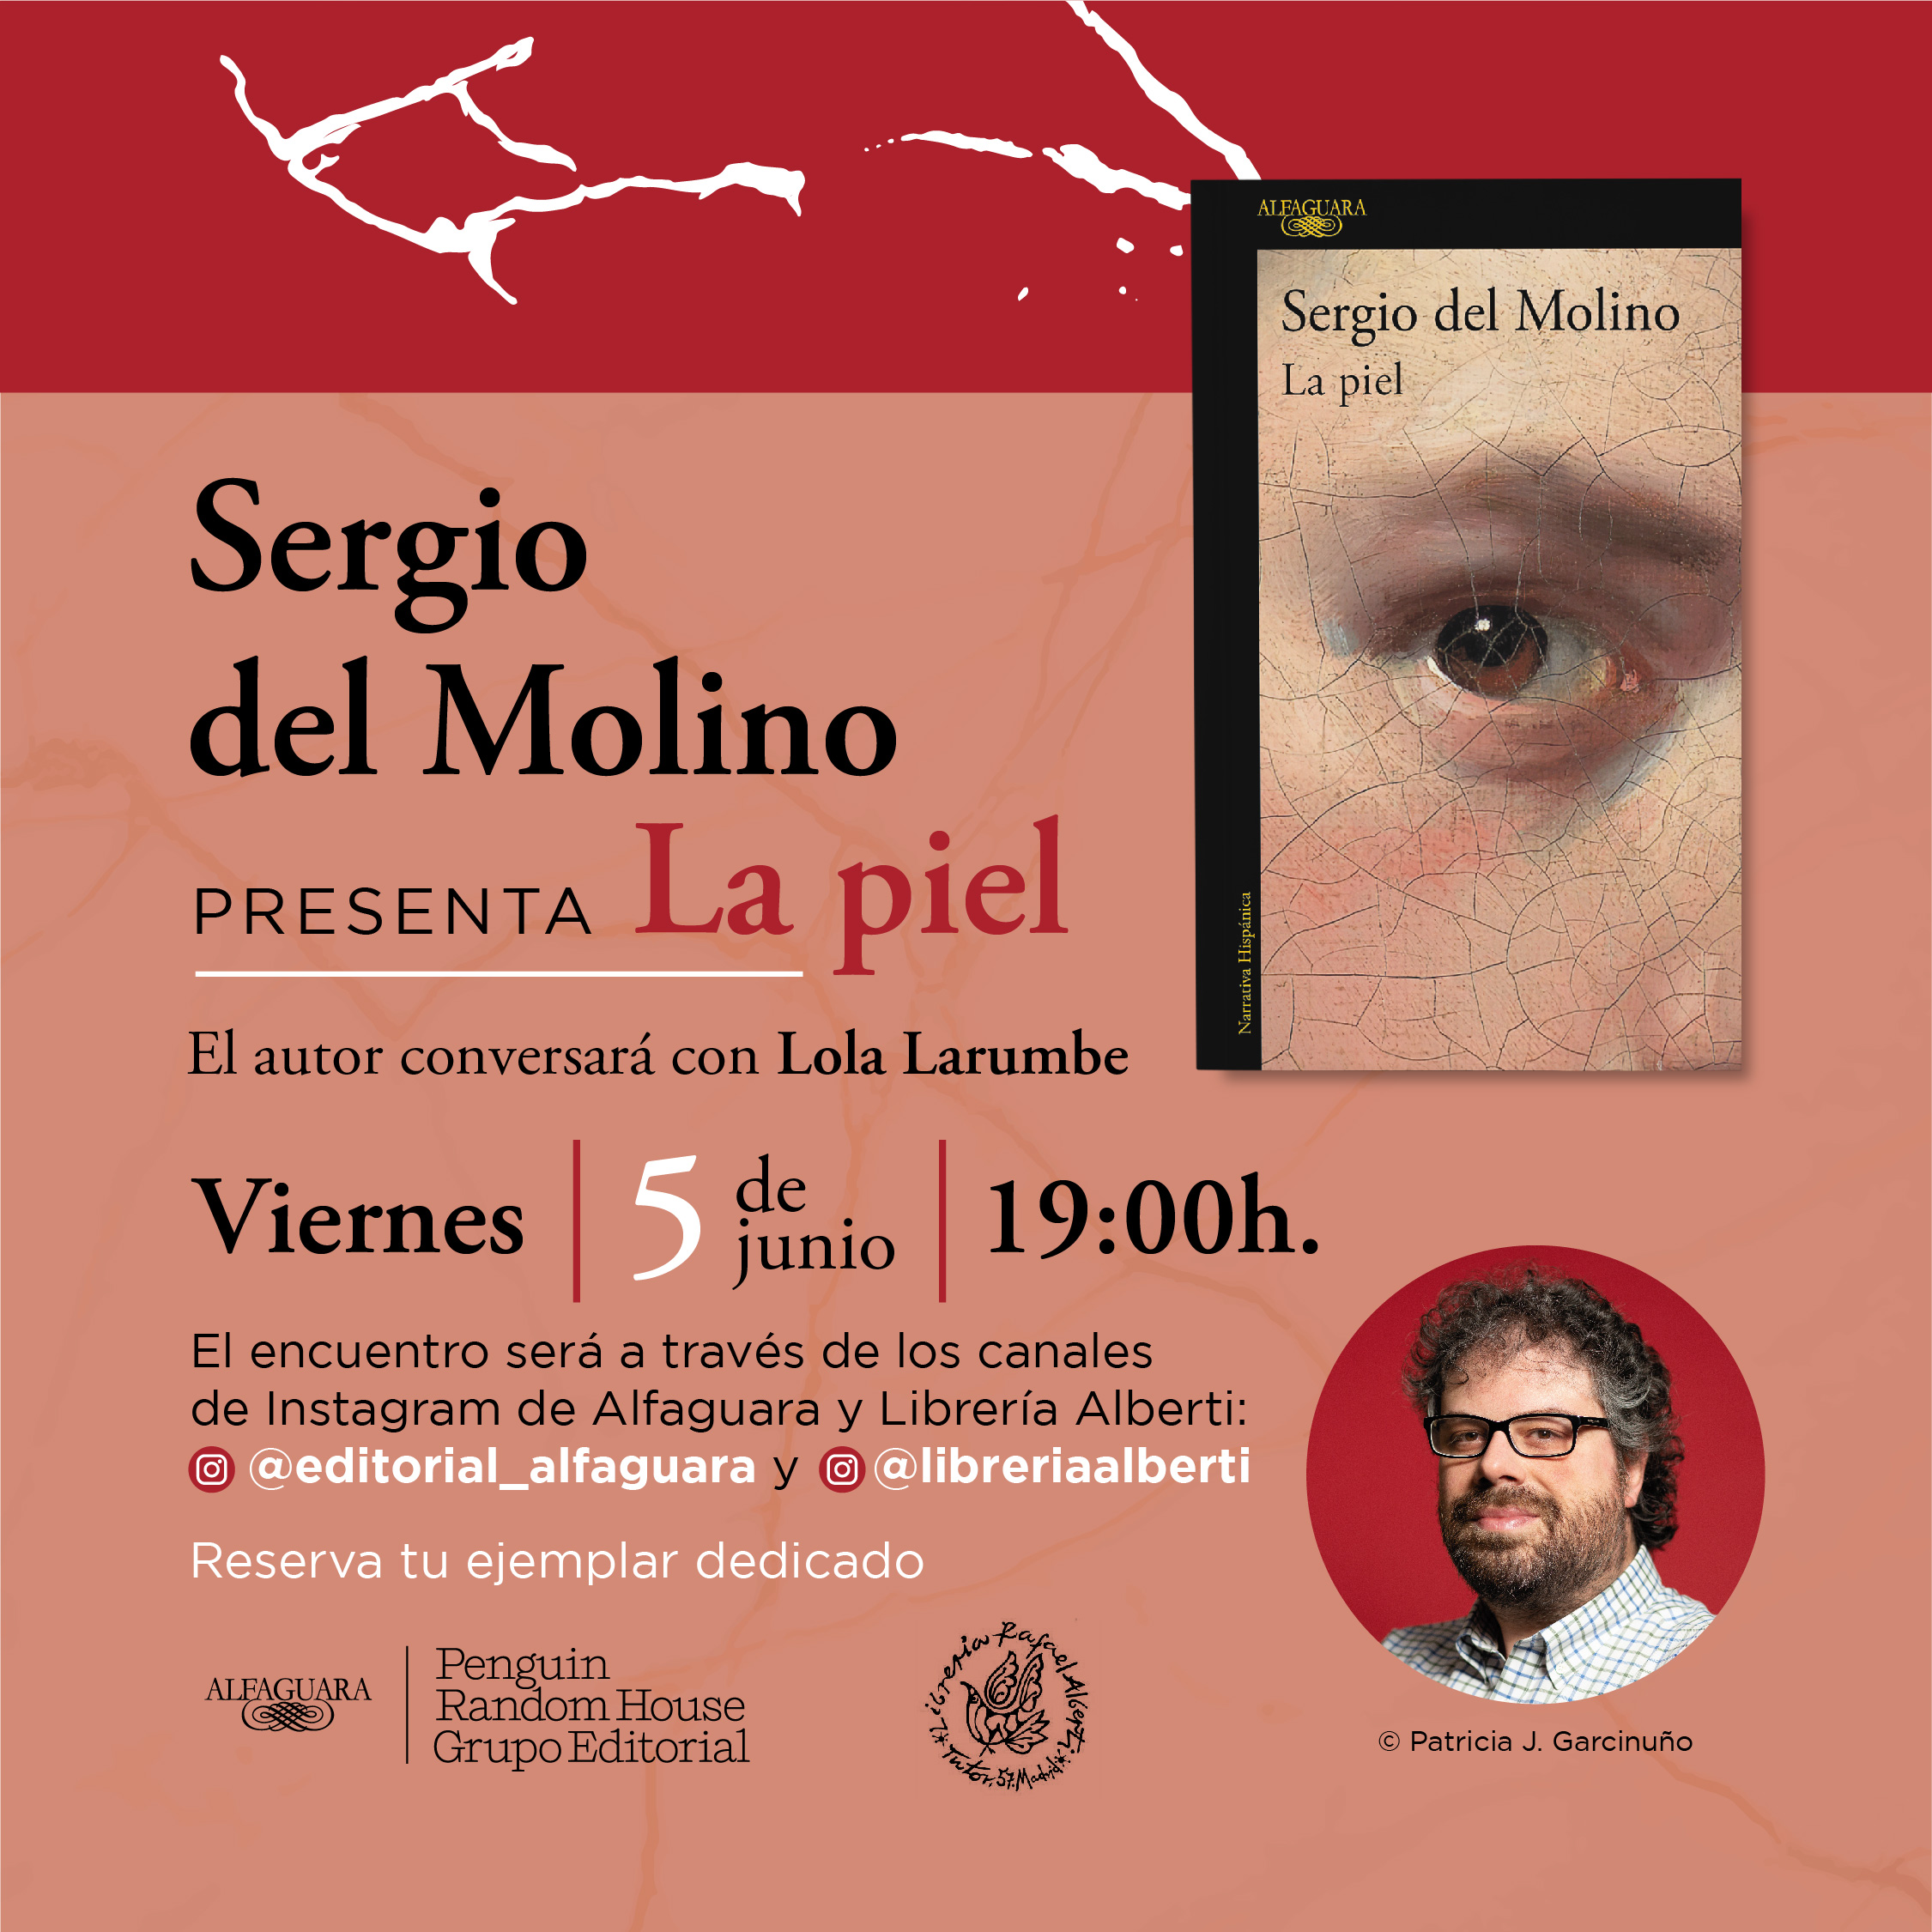 Sergio del Molino presenta en Instagram Live "La Piel"  (Alfaguara)